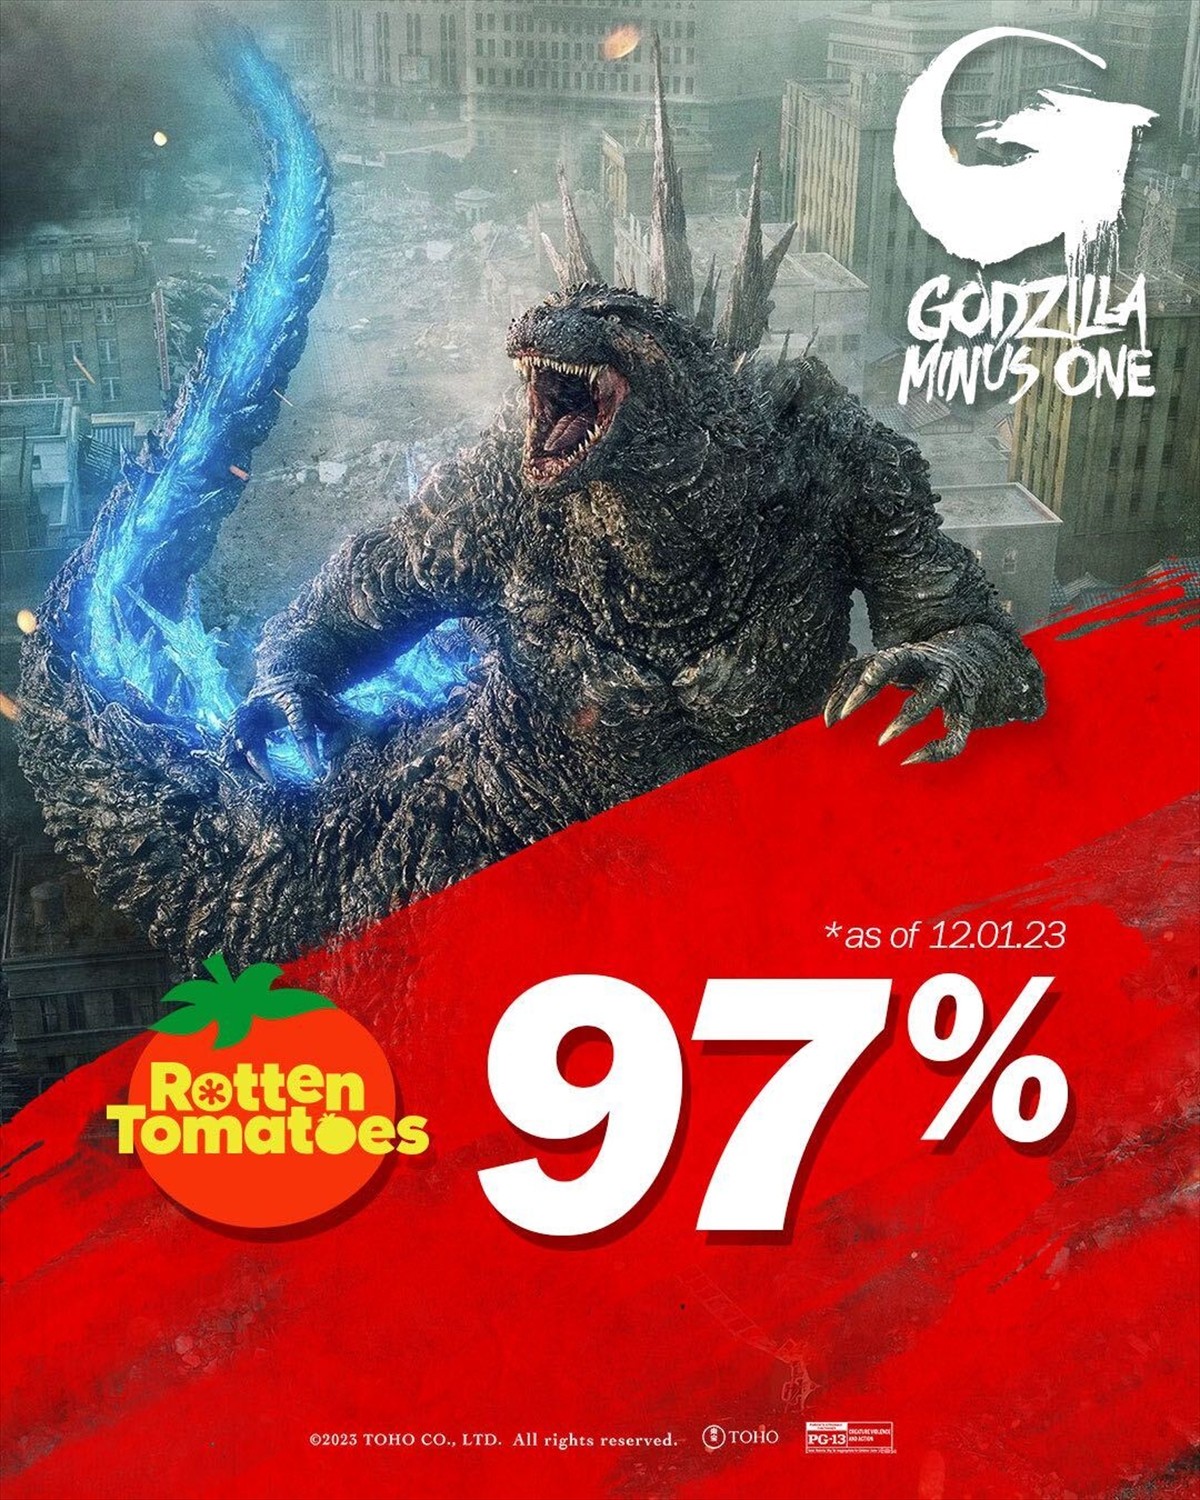 『ゴジラ‐1.0』、全米で驚異のオープニング興収記録樹立!!　Rotten Tomatoesでも高評価